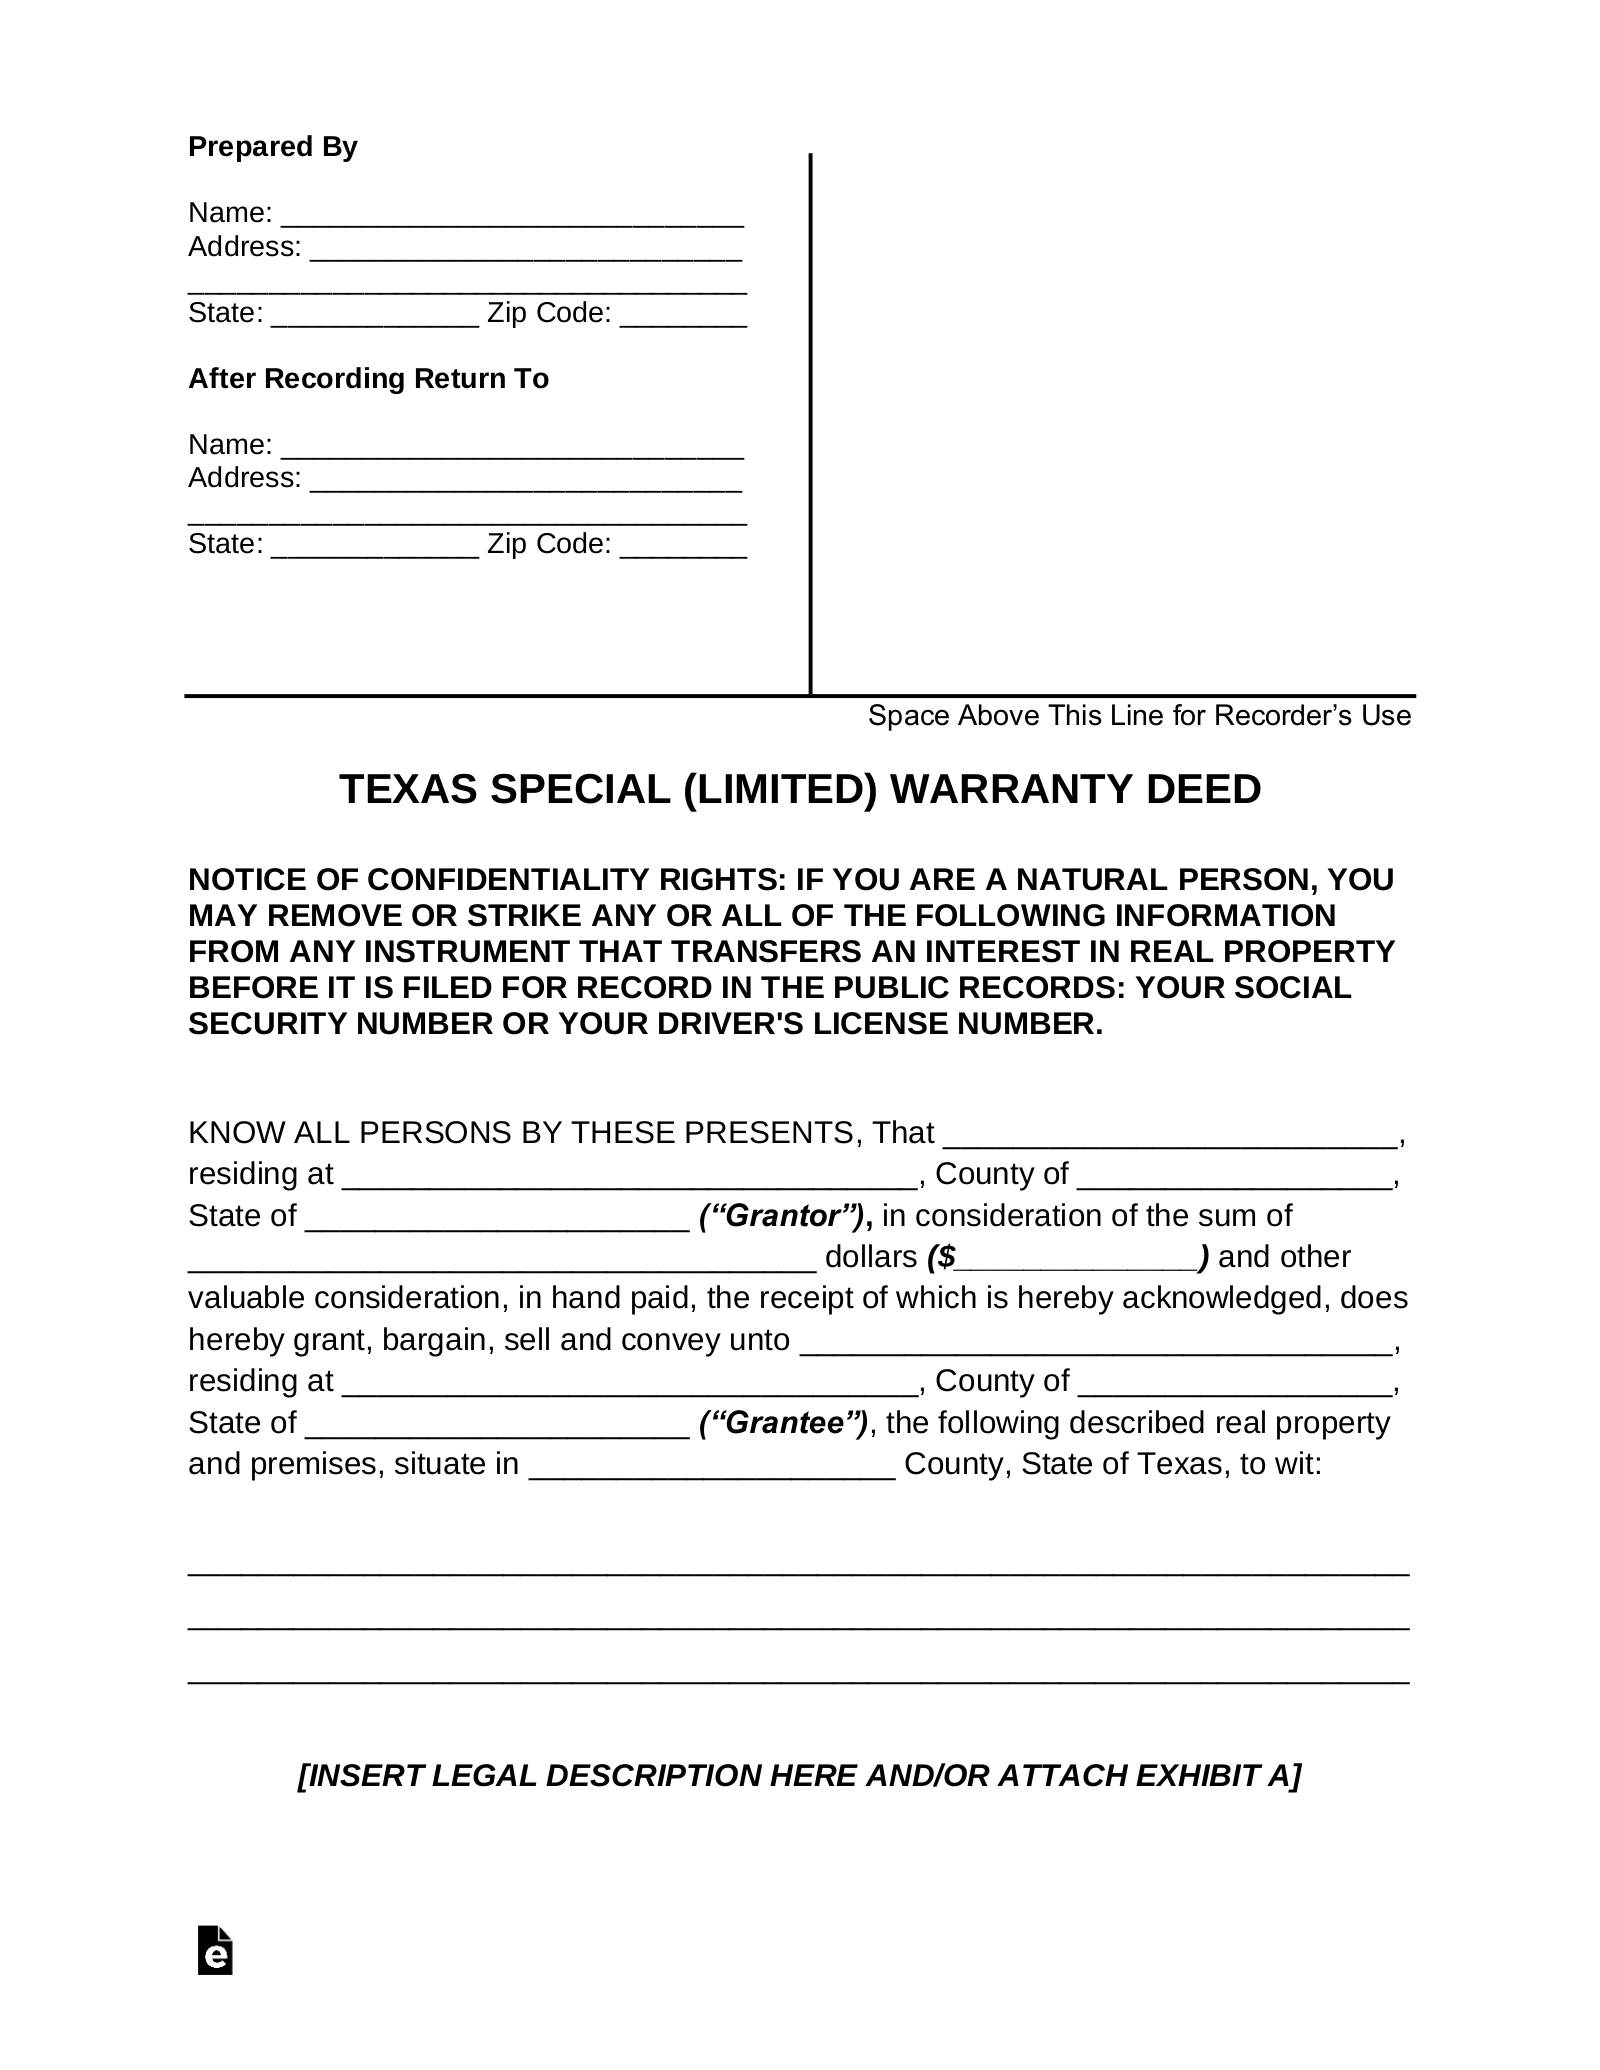 Texas Special Warranty Deed Form